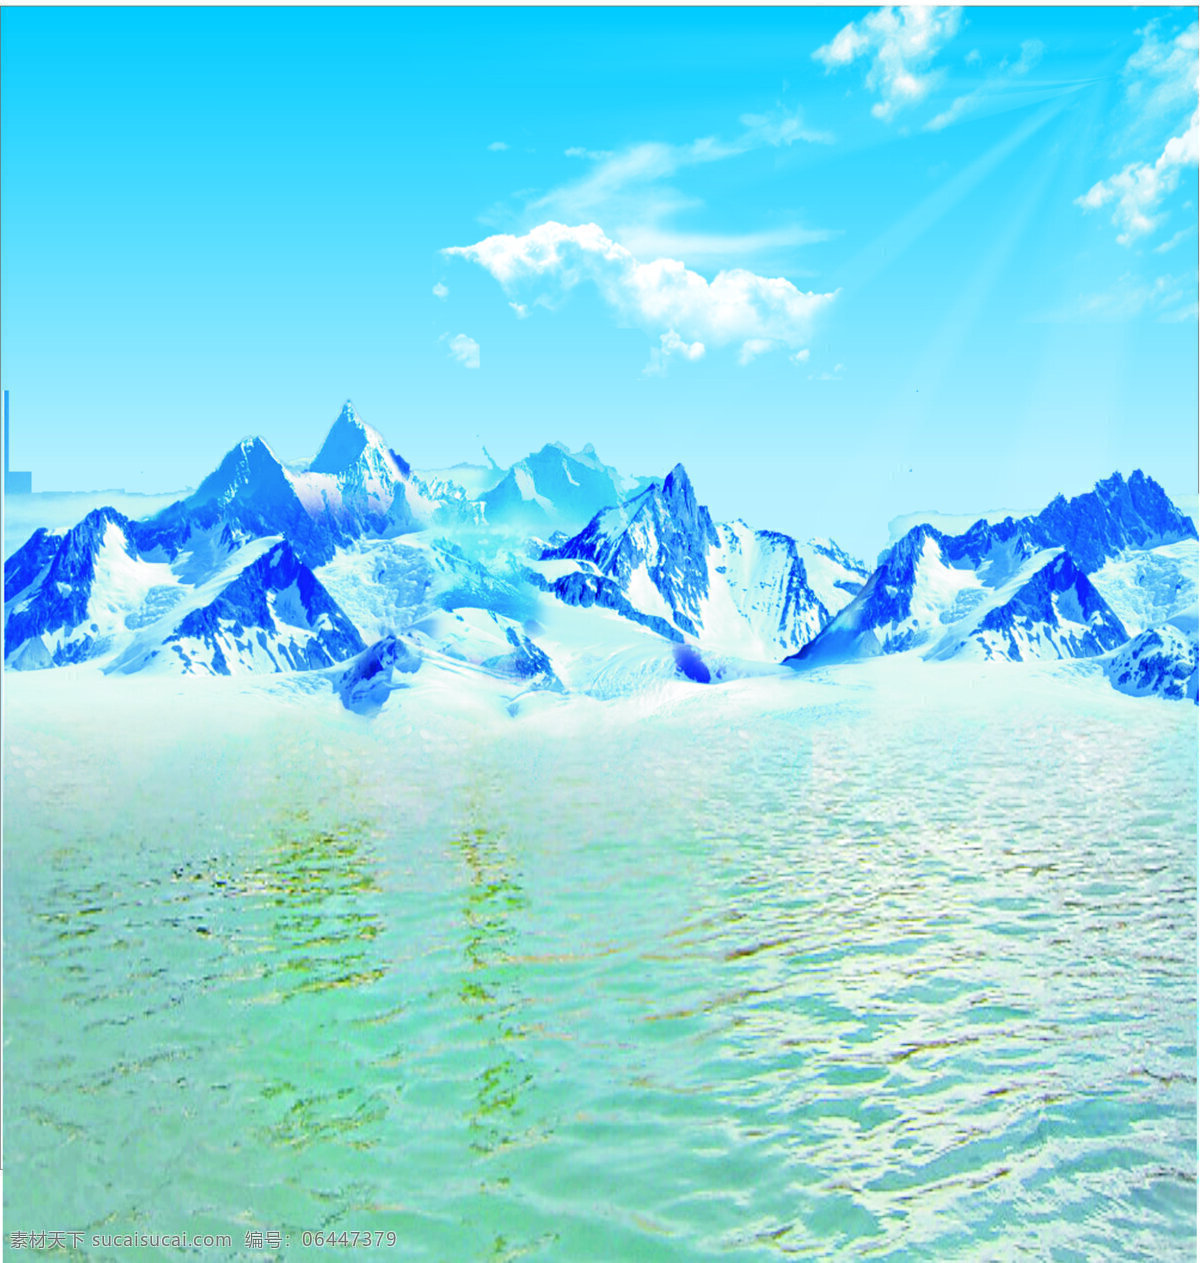 冰山 蓝天 雪 自然景观 自然风景 摄影图库